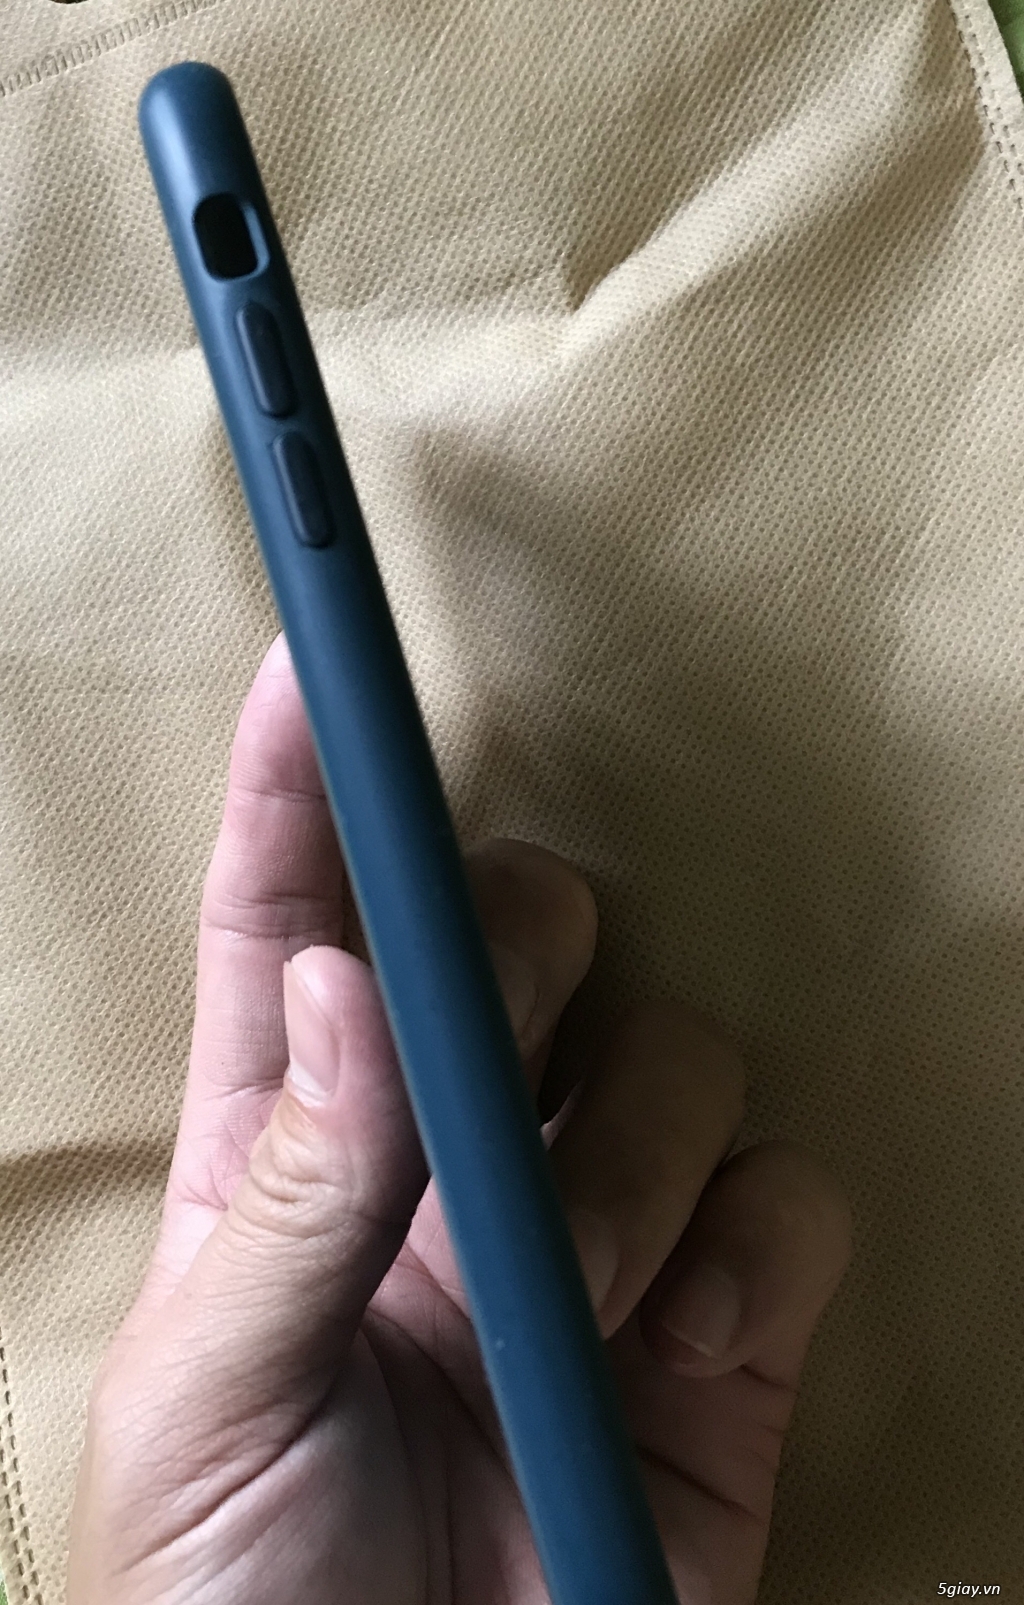 Ốp lưng iphone xsmax màu xanh dương - 3